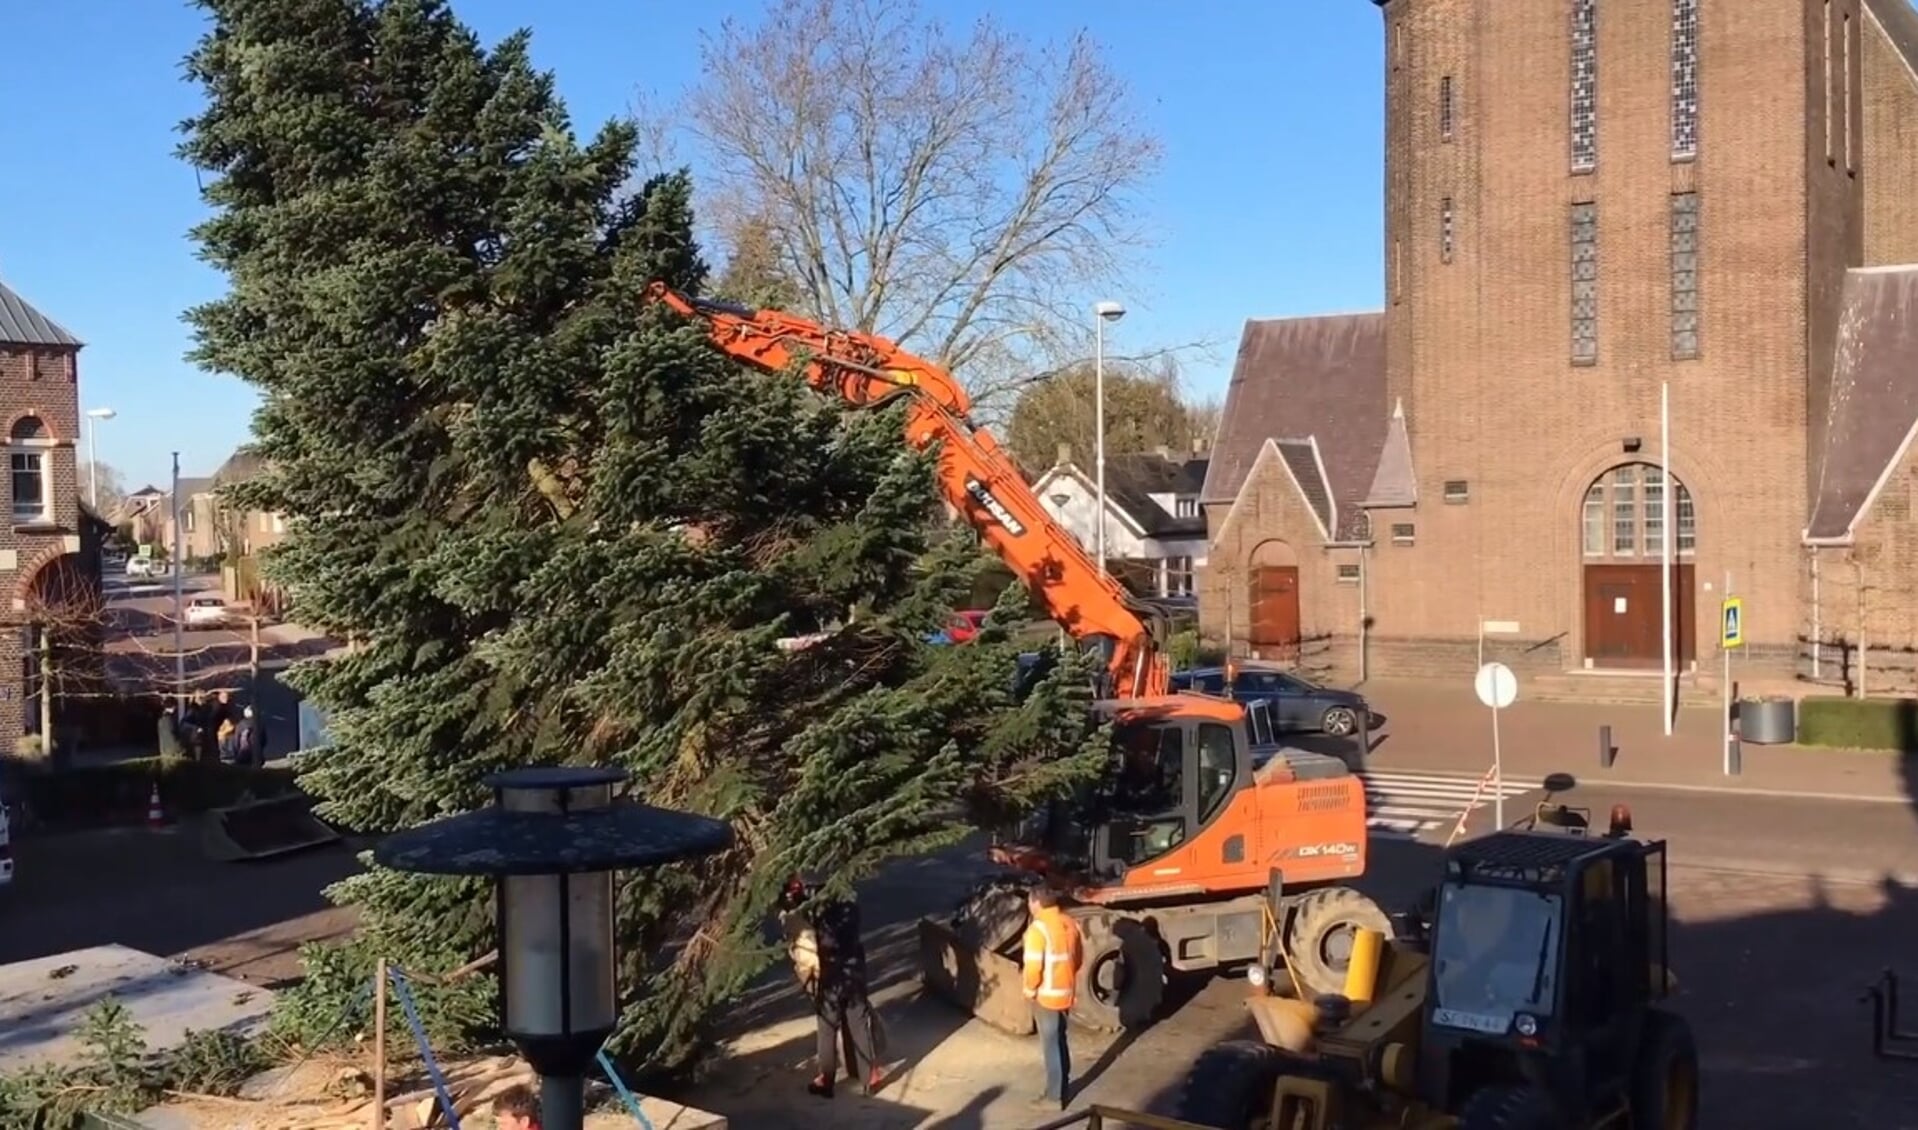 De Kerstboom op het Raadhuisplein is weer geplaatst